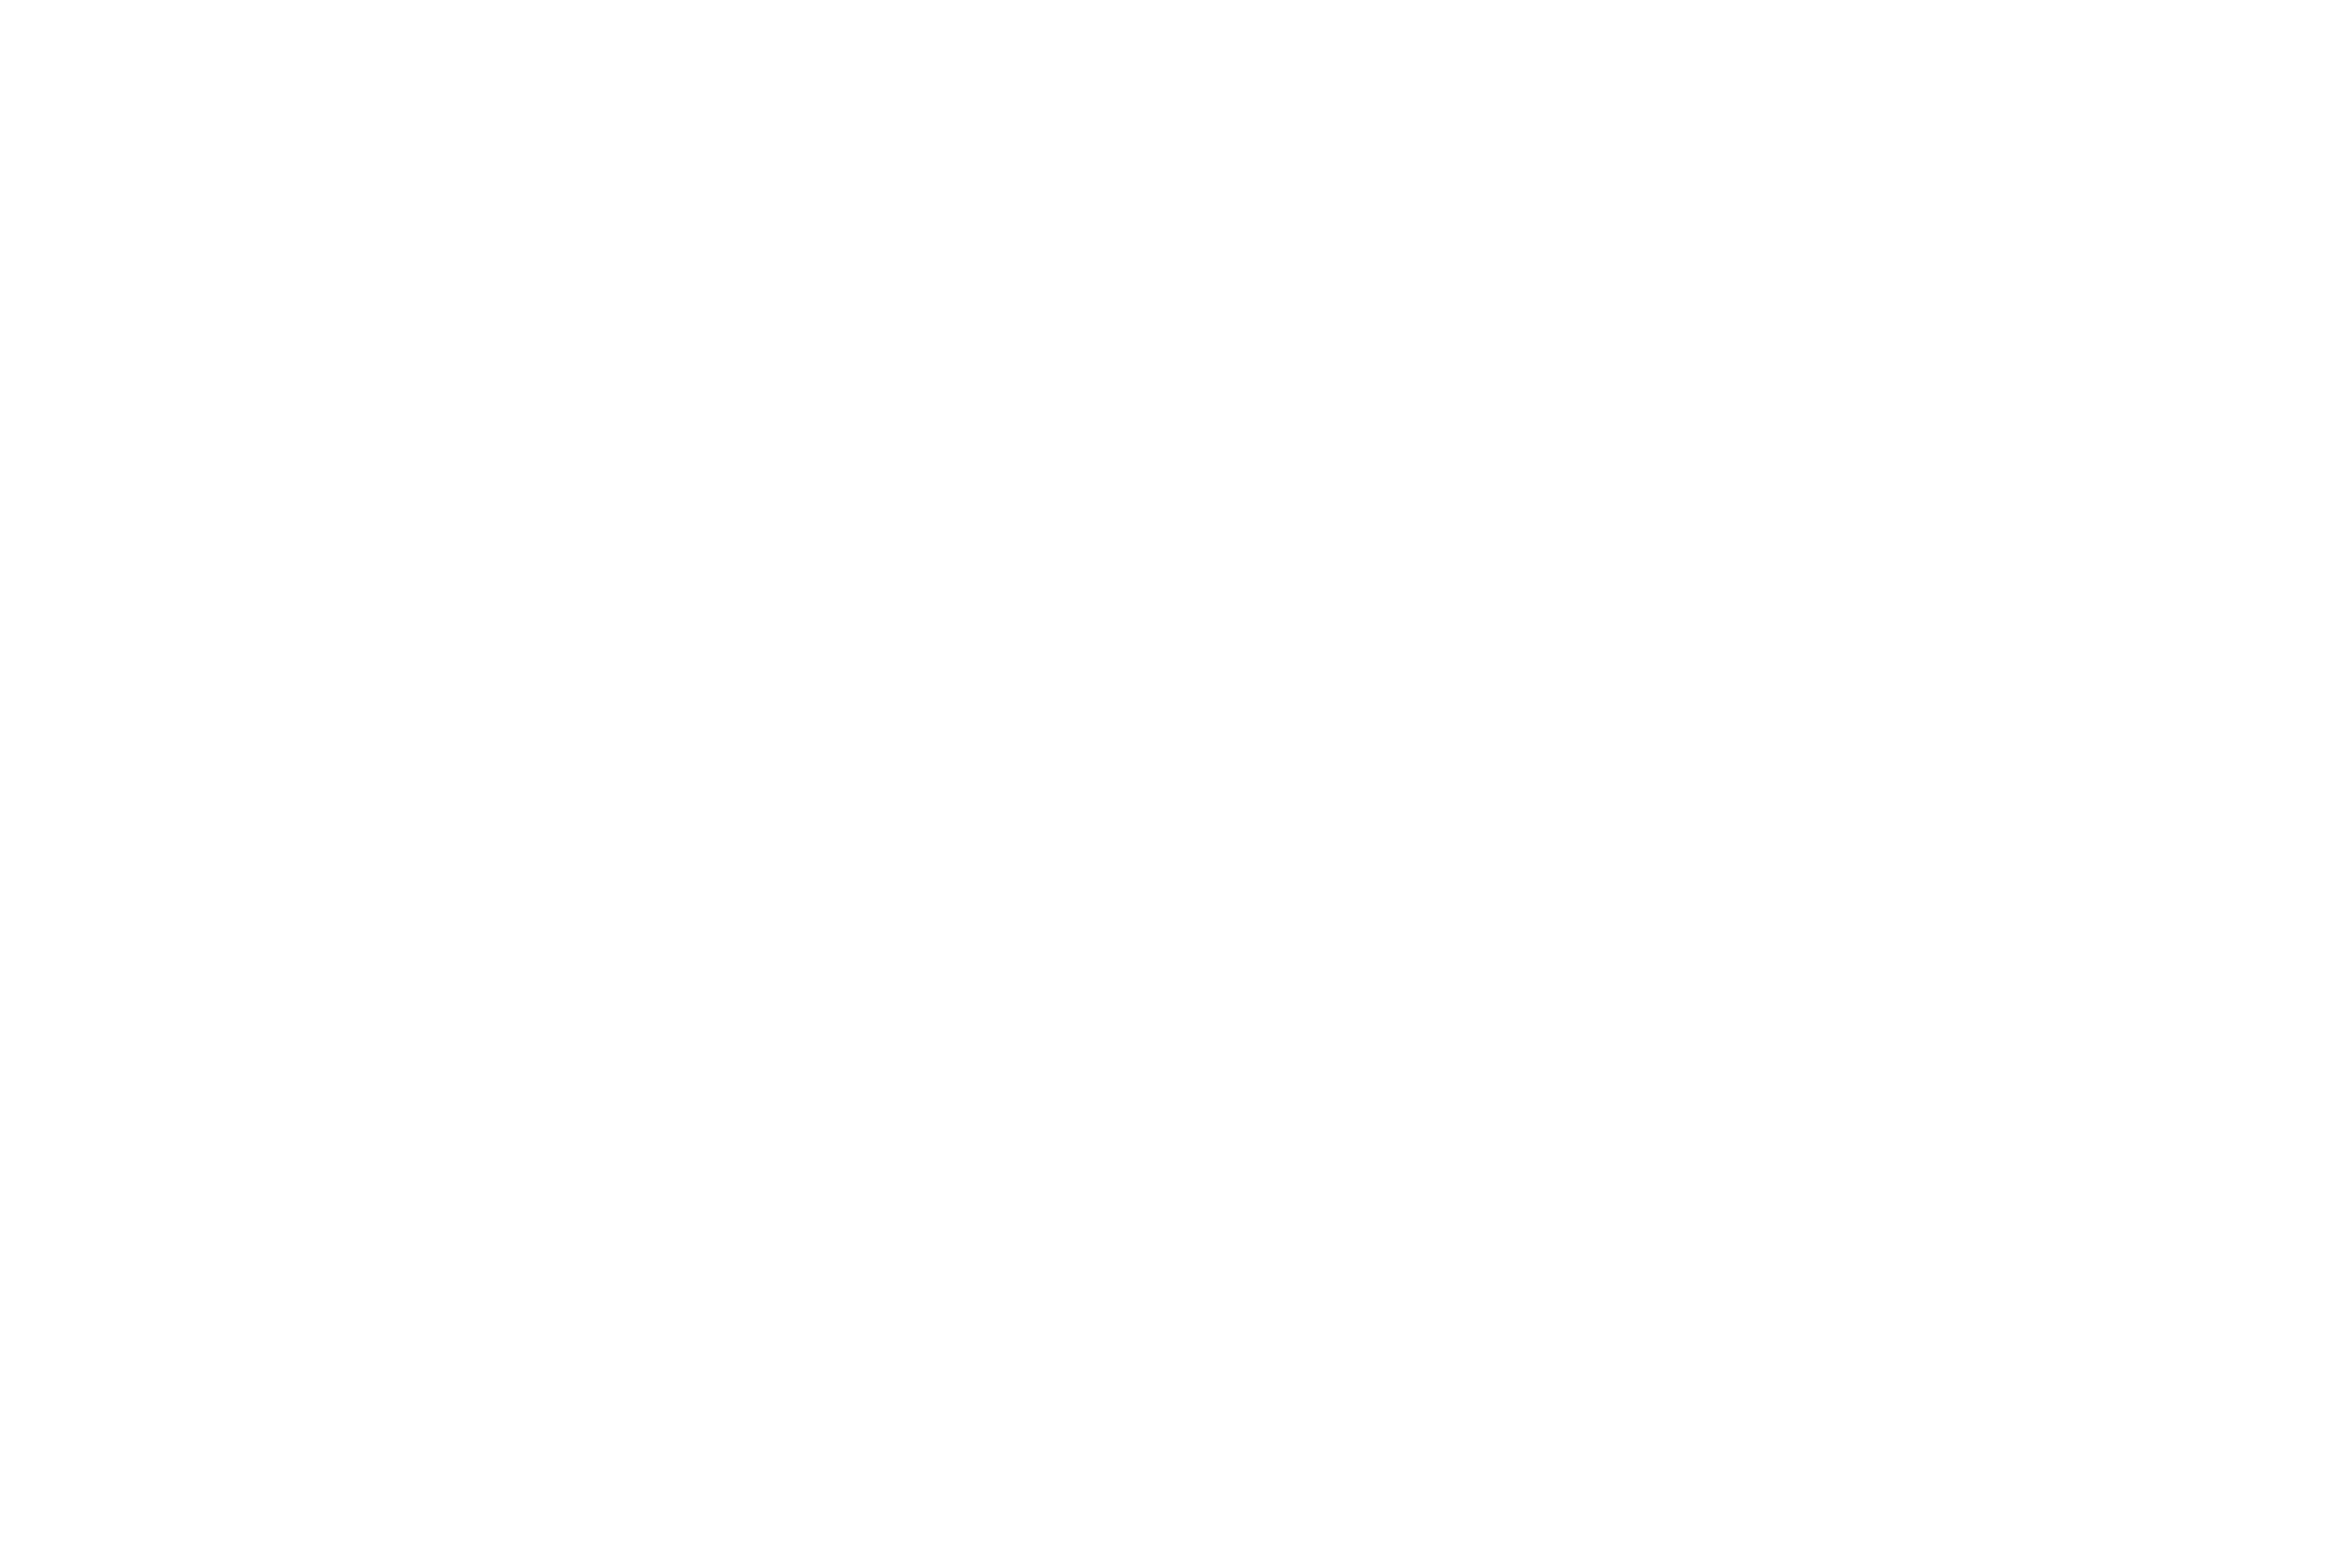 6G-XR - white